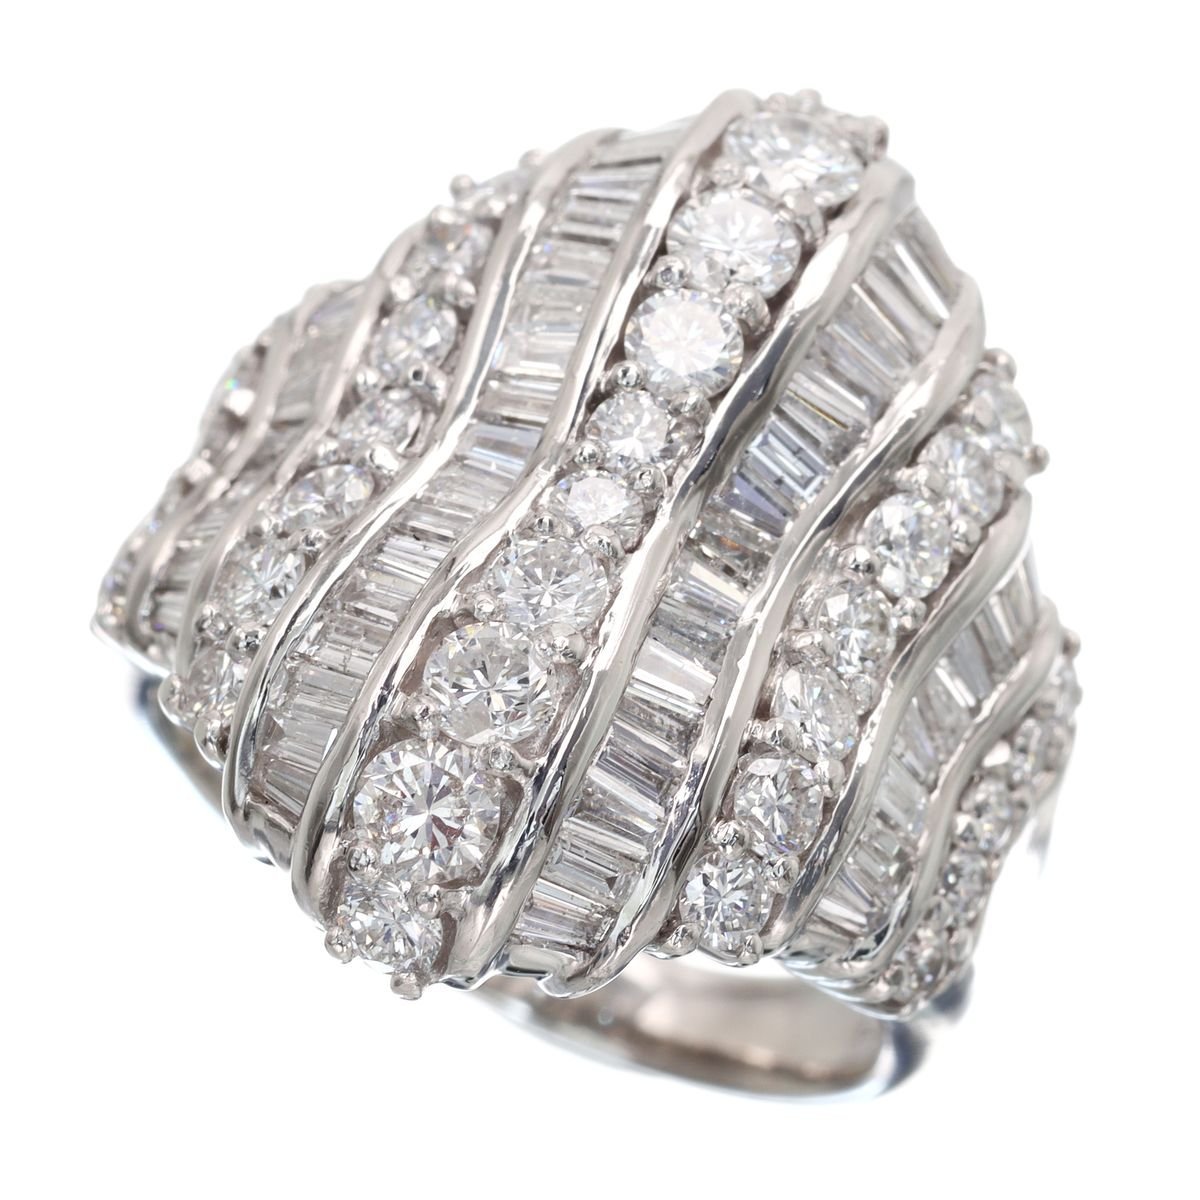 44％割引完璧 婚約指輪 エンゲージリング ダイヤモンド 0.5カラット プラチナ 鑑定書付 0.51ct Eカラー VS1クラス 3EXカット  GIA 22385-1909 HKER*0.5 ダイヤモンド レディースアクセサリー アクセサリー、時計-MBIS.CA